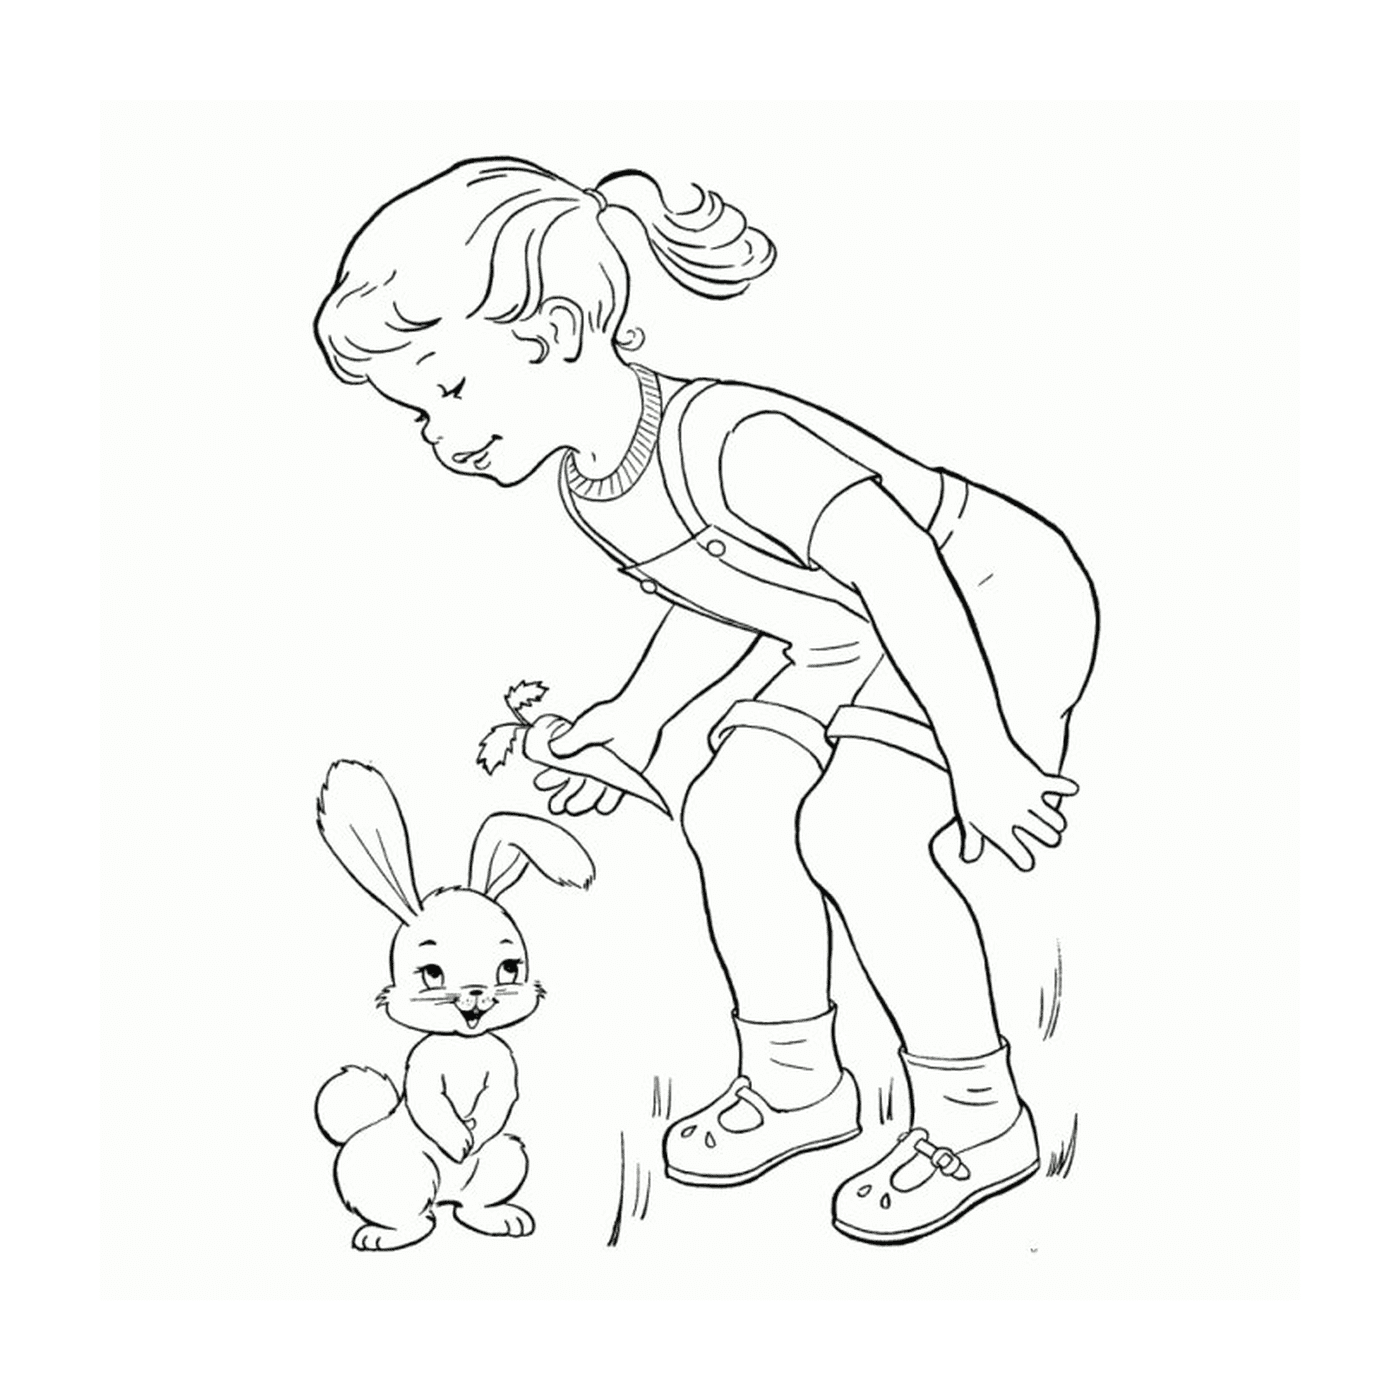  A little girl next to a little rabbit 